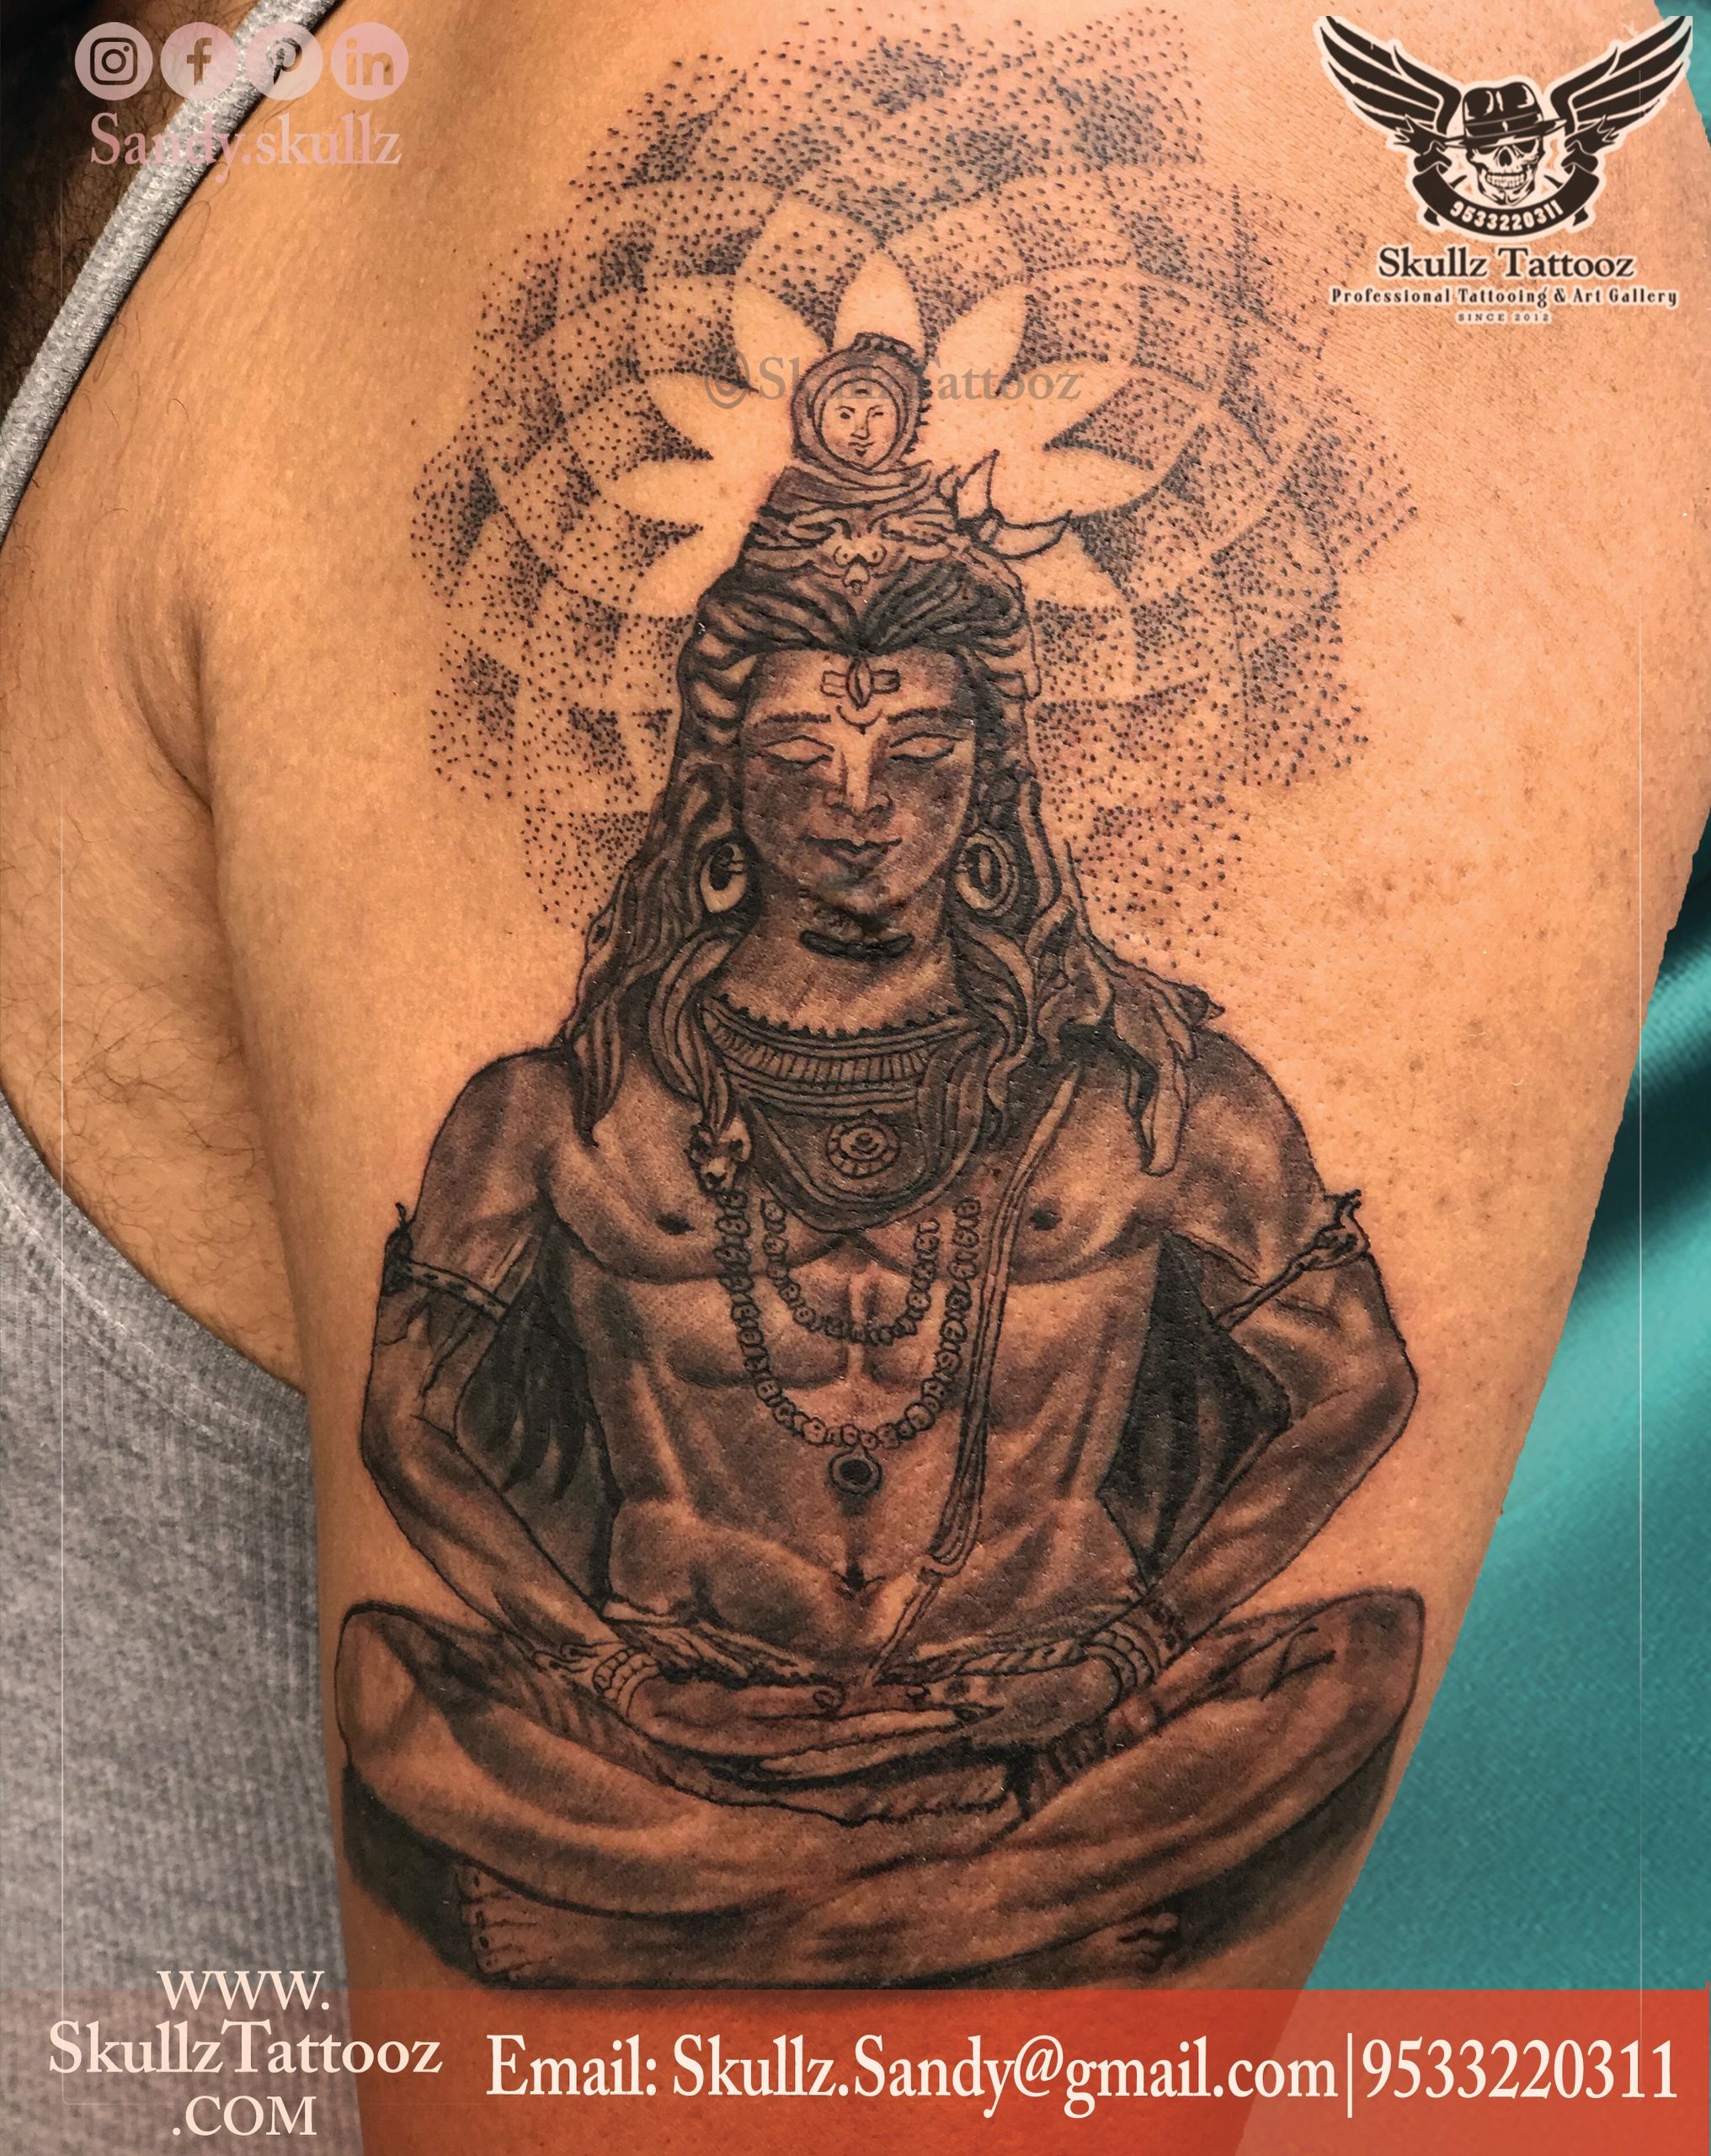 Shiva tattoo design | Shiva tattoo, Trishul tattoo designs, Shiva tattoo  design